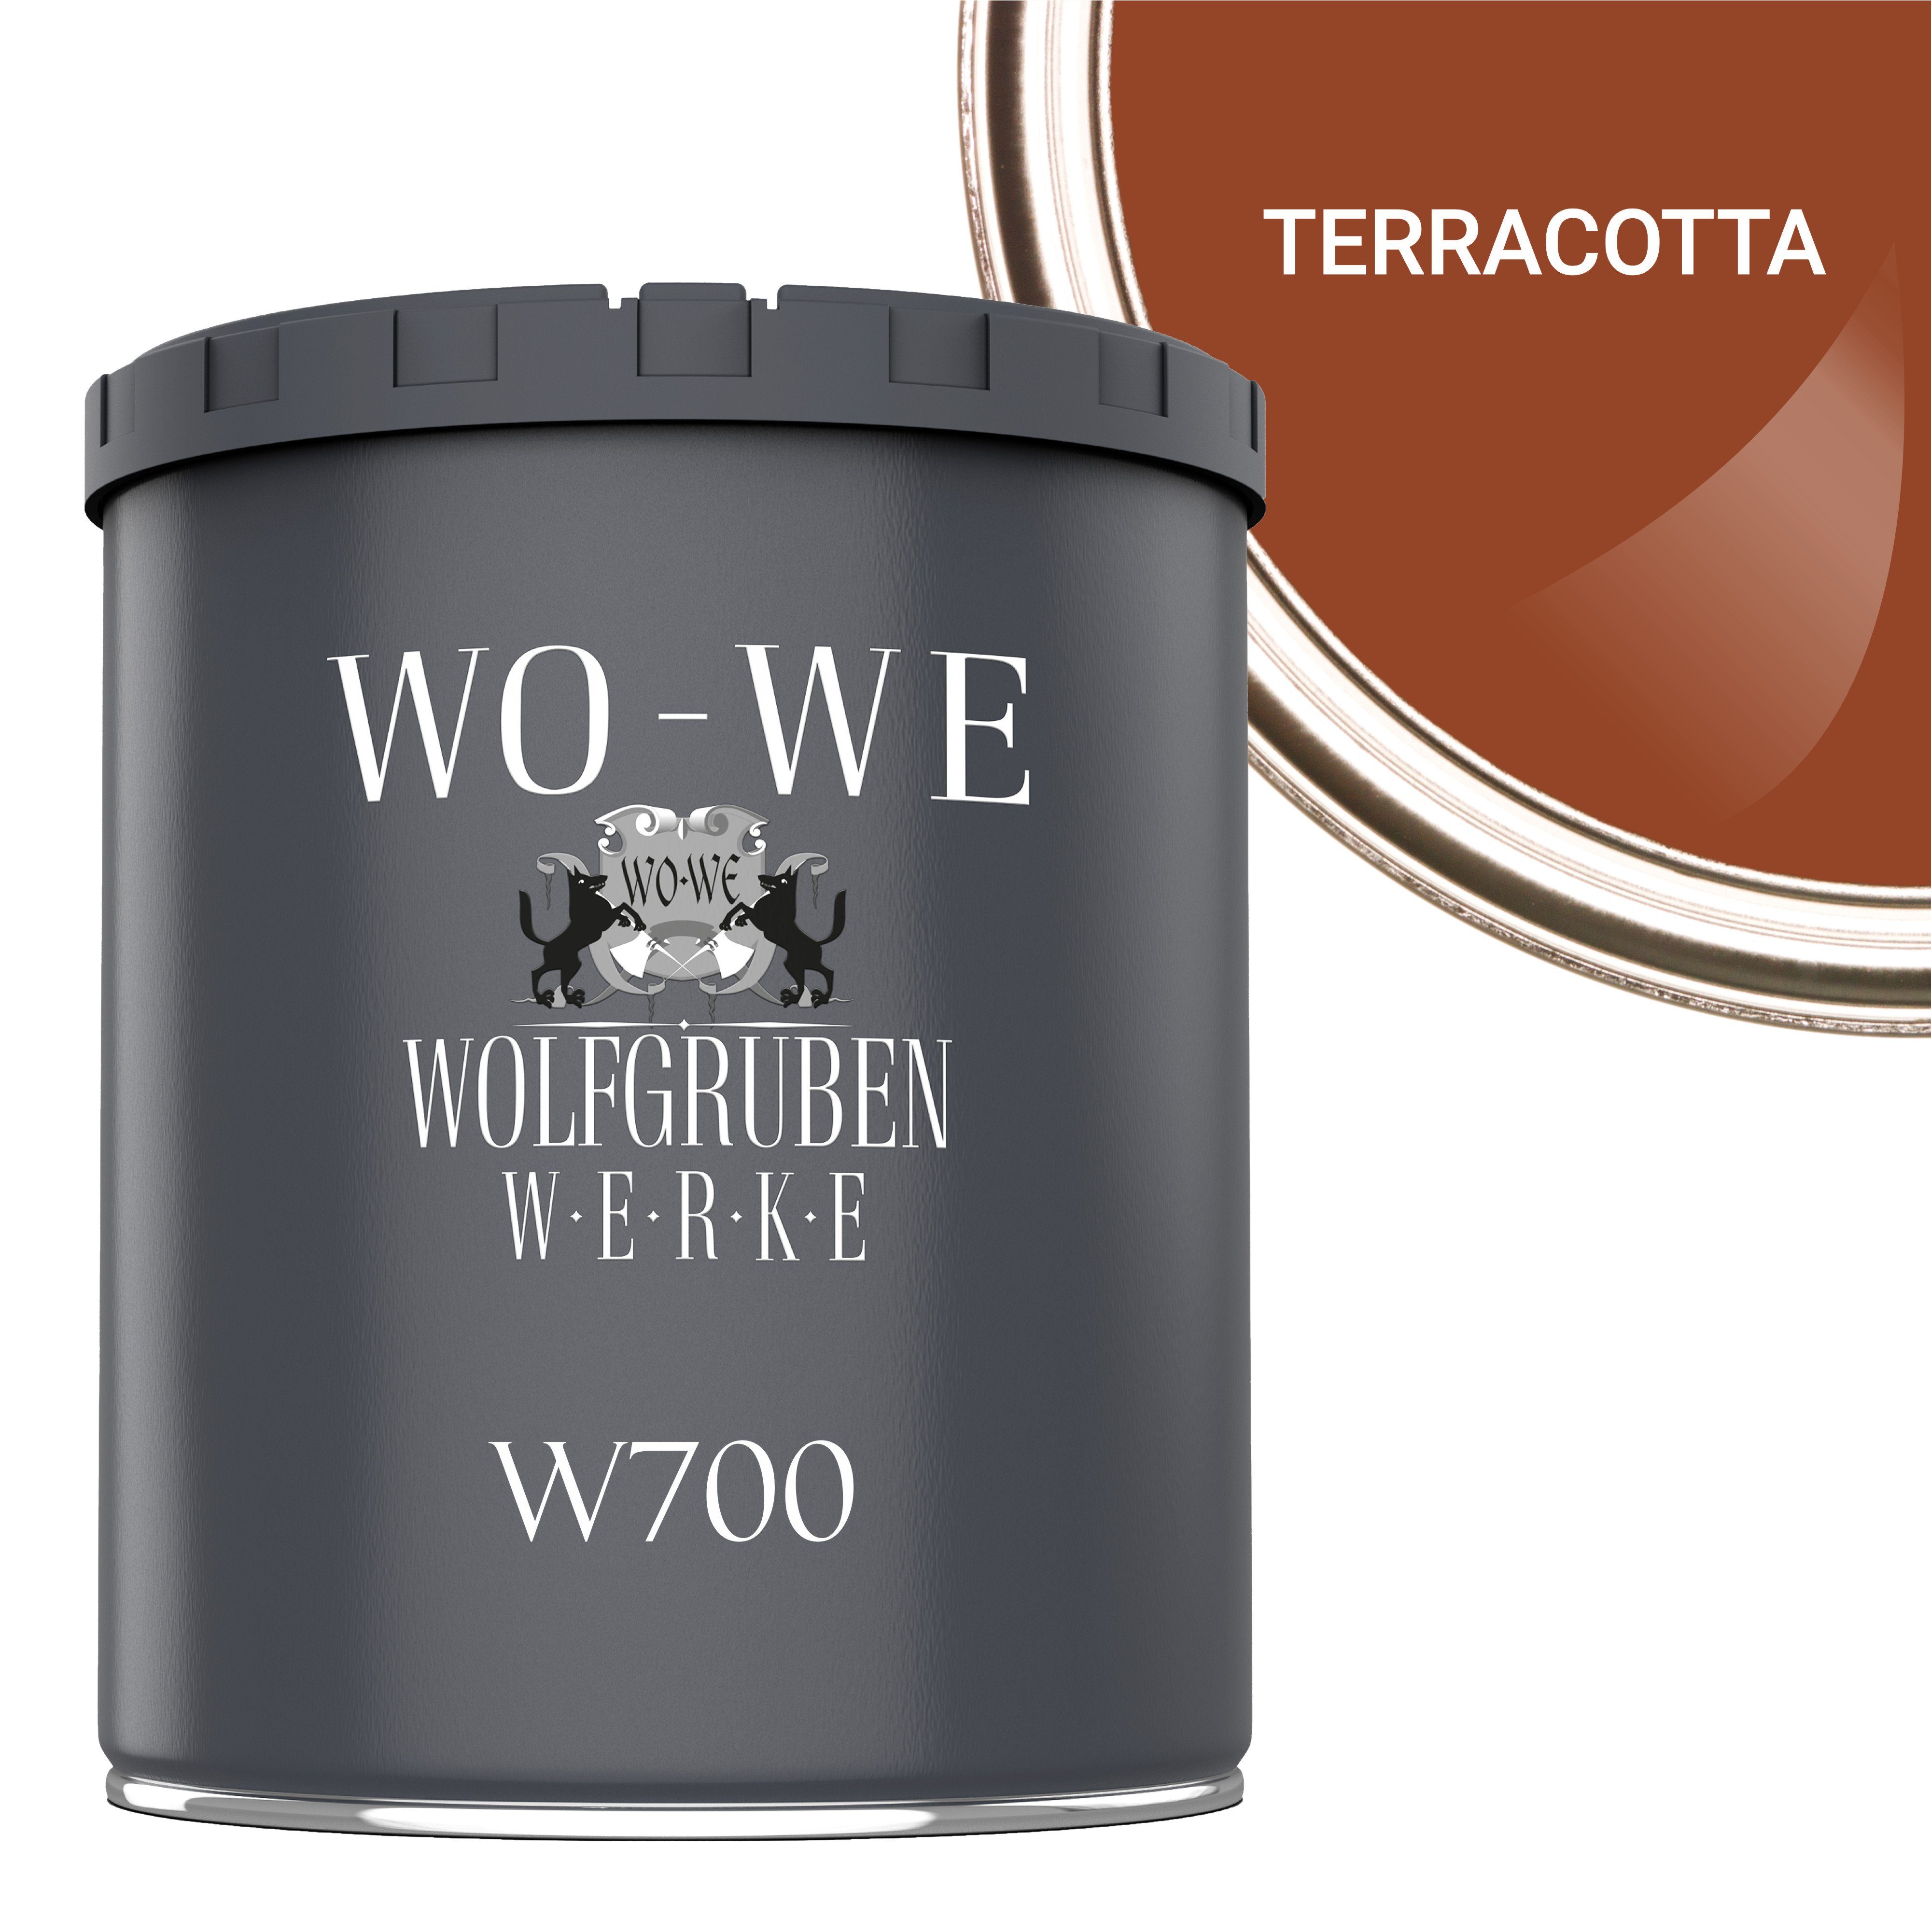 WO-WE Bodenversiegelung Betonfarbe Bodenfarbe Bodenbeschichtung W700, 1-10L, Seidenglänzend